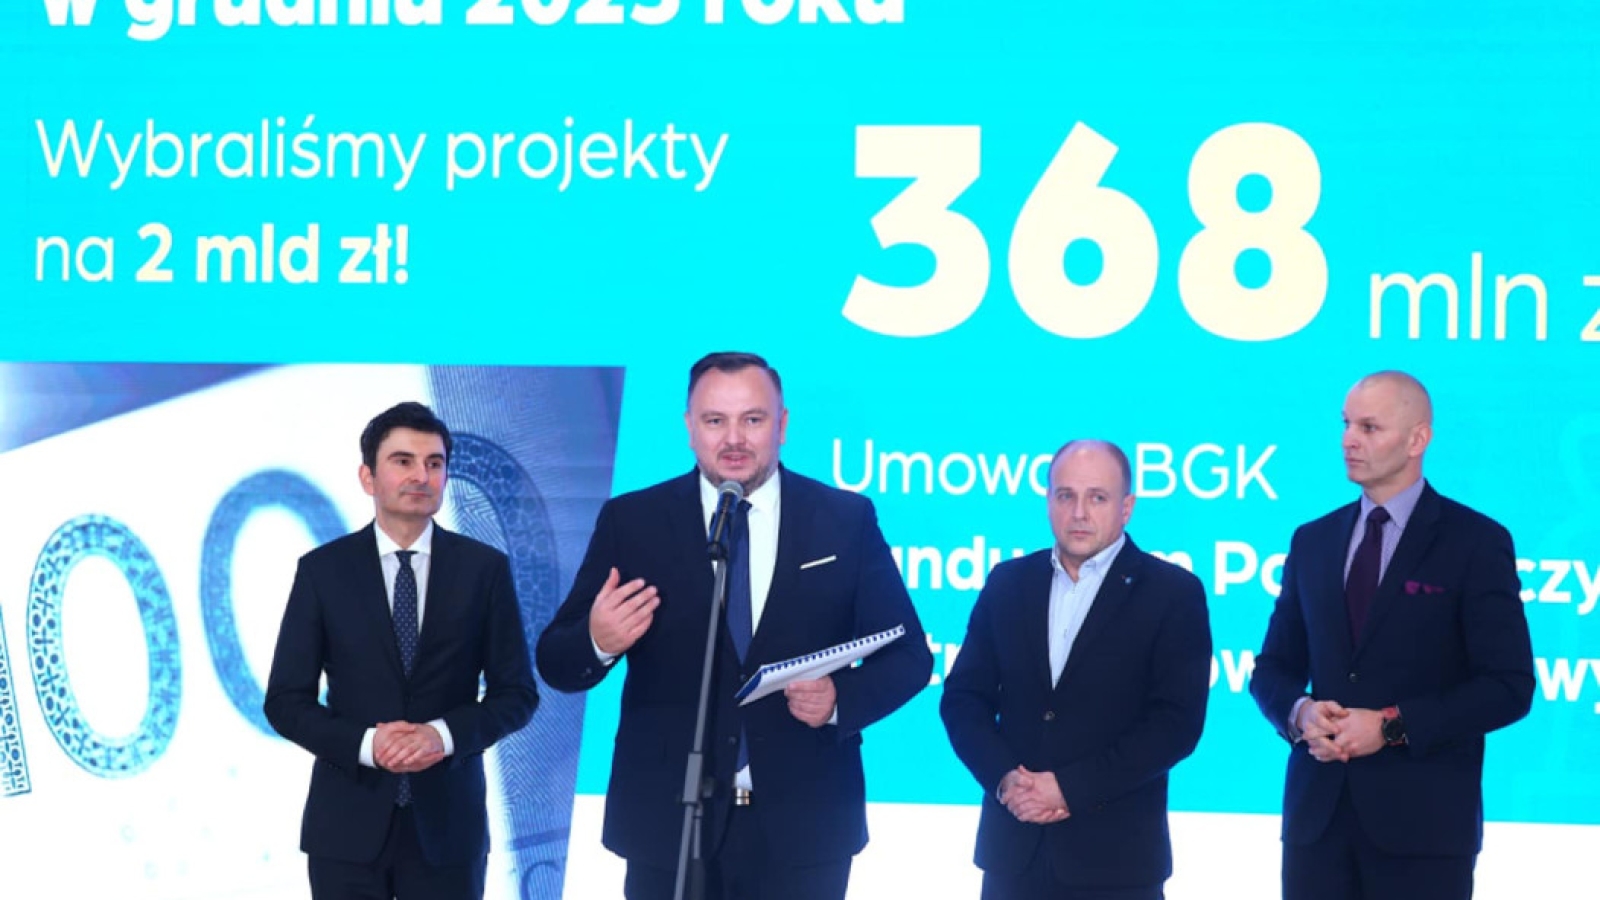 Województwo Śląskie Zainwestuje 3,1 mld zł w Transformacyjne Projekty Regionalne